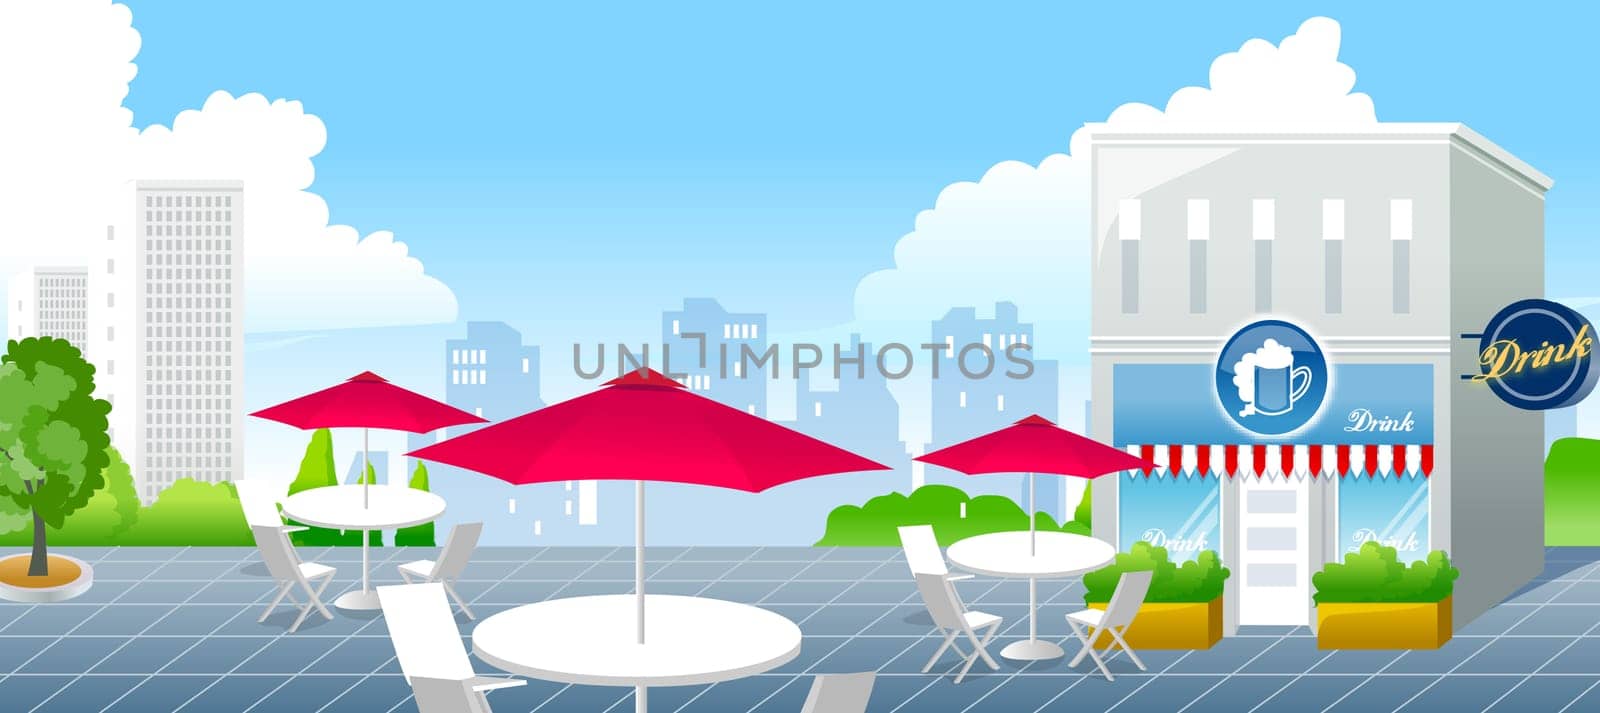 art,illustration,shade,sky,table,umbrella